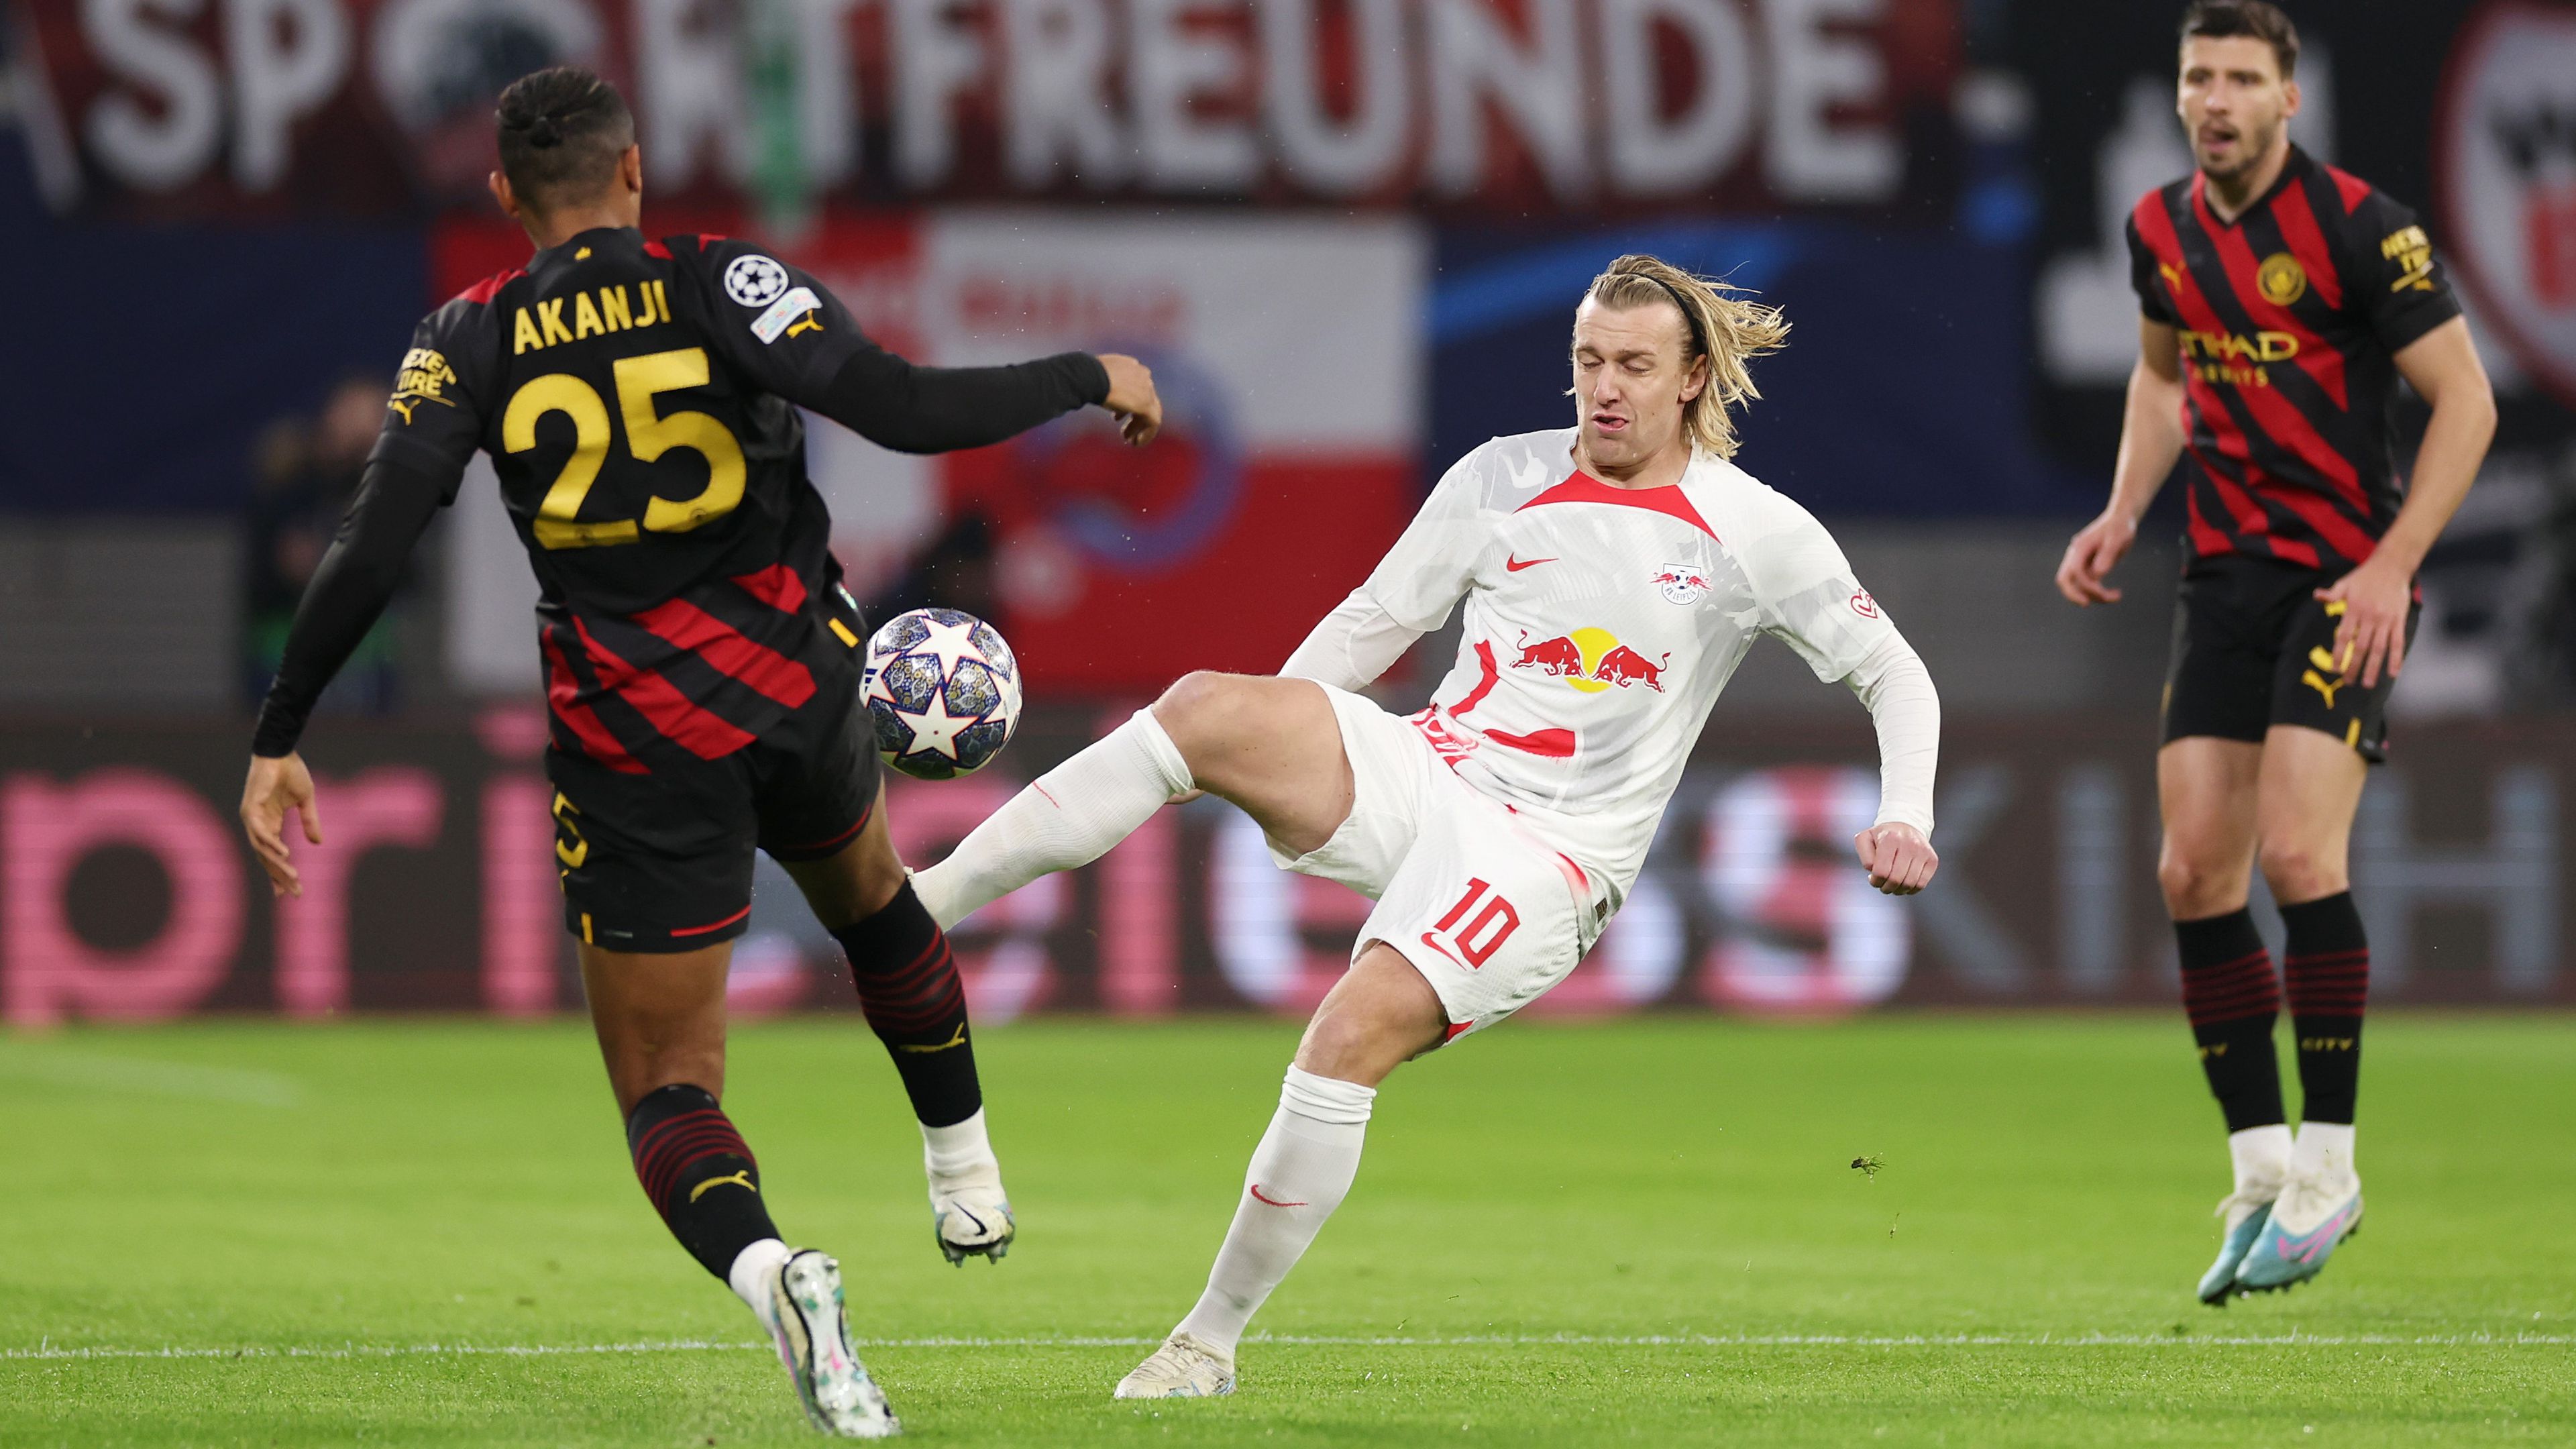 ÉLŐ:  A Leipzig Szoboszlaival a kezdőben próbál előnyt szerezni a Manchester City ellen